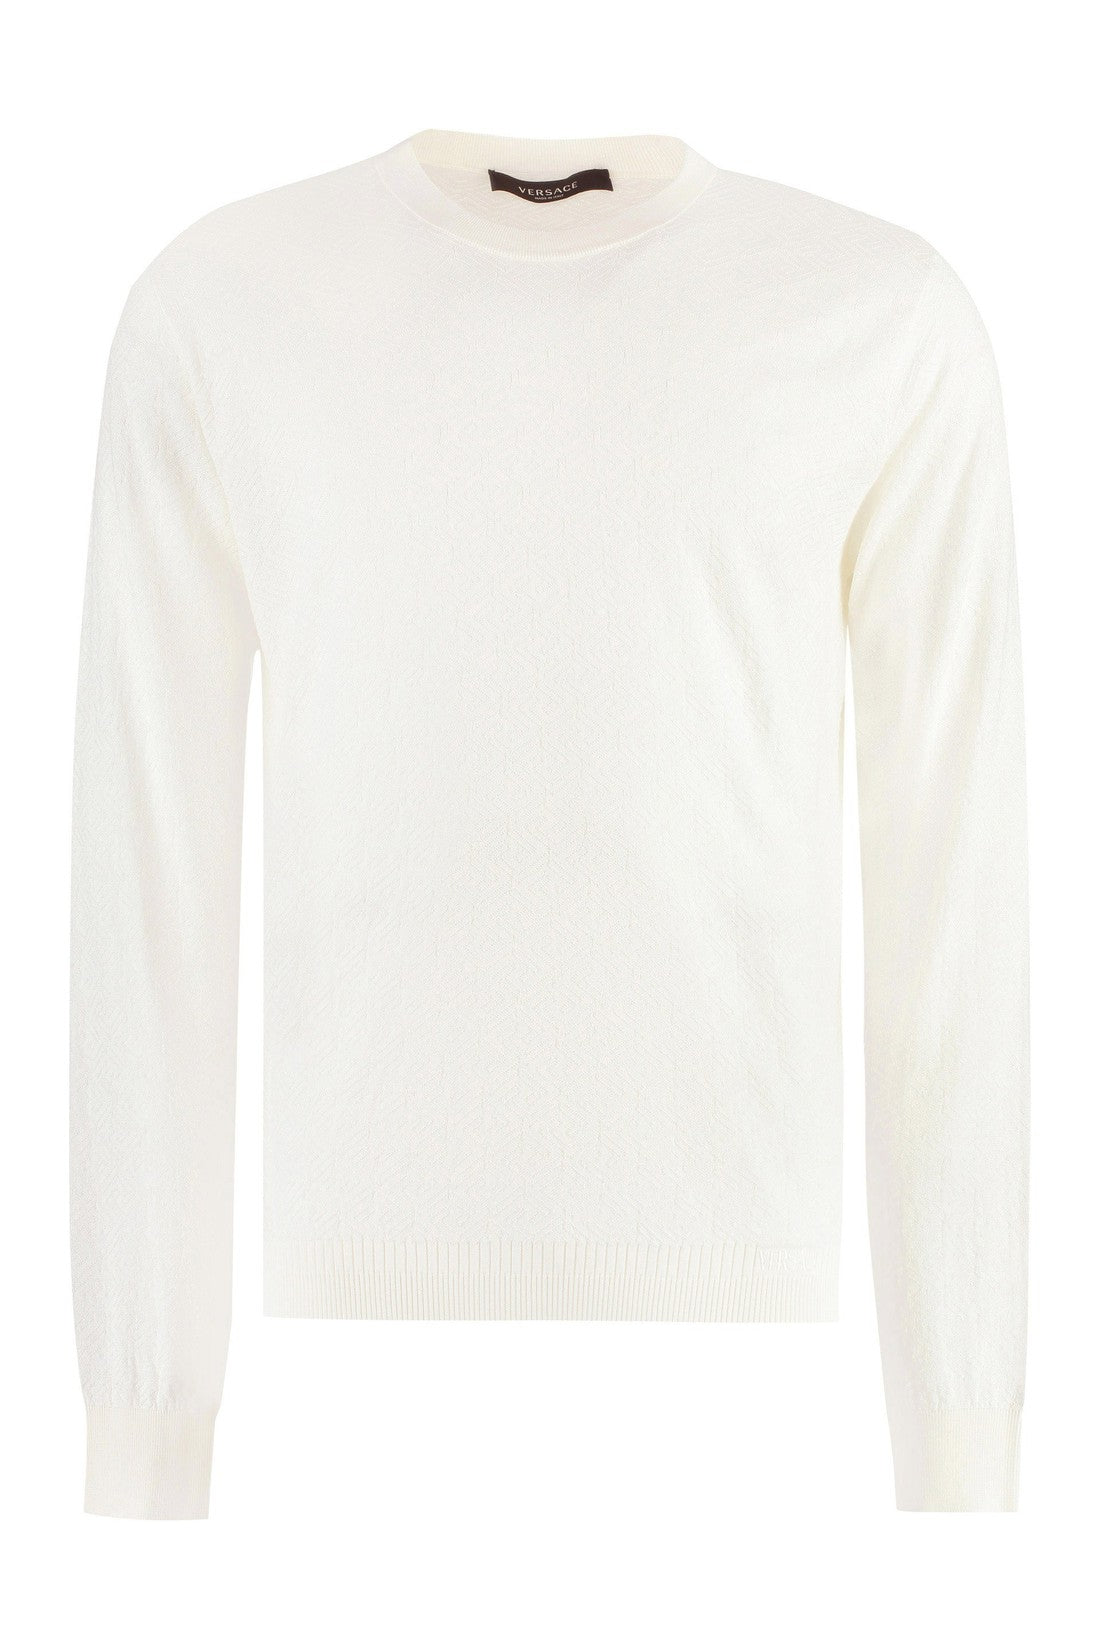 Versace-OUTLET-SALE-Long sleeve cotton blend t-shirt-ARCHIVIST